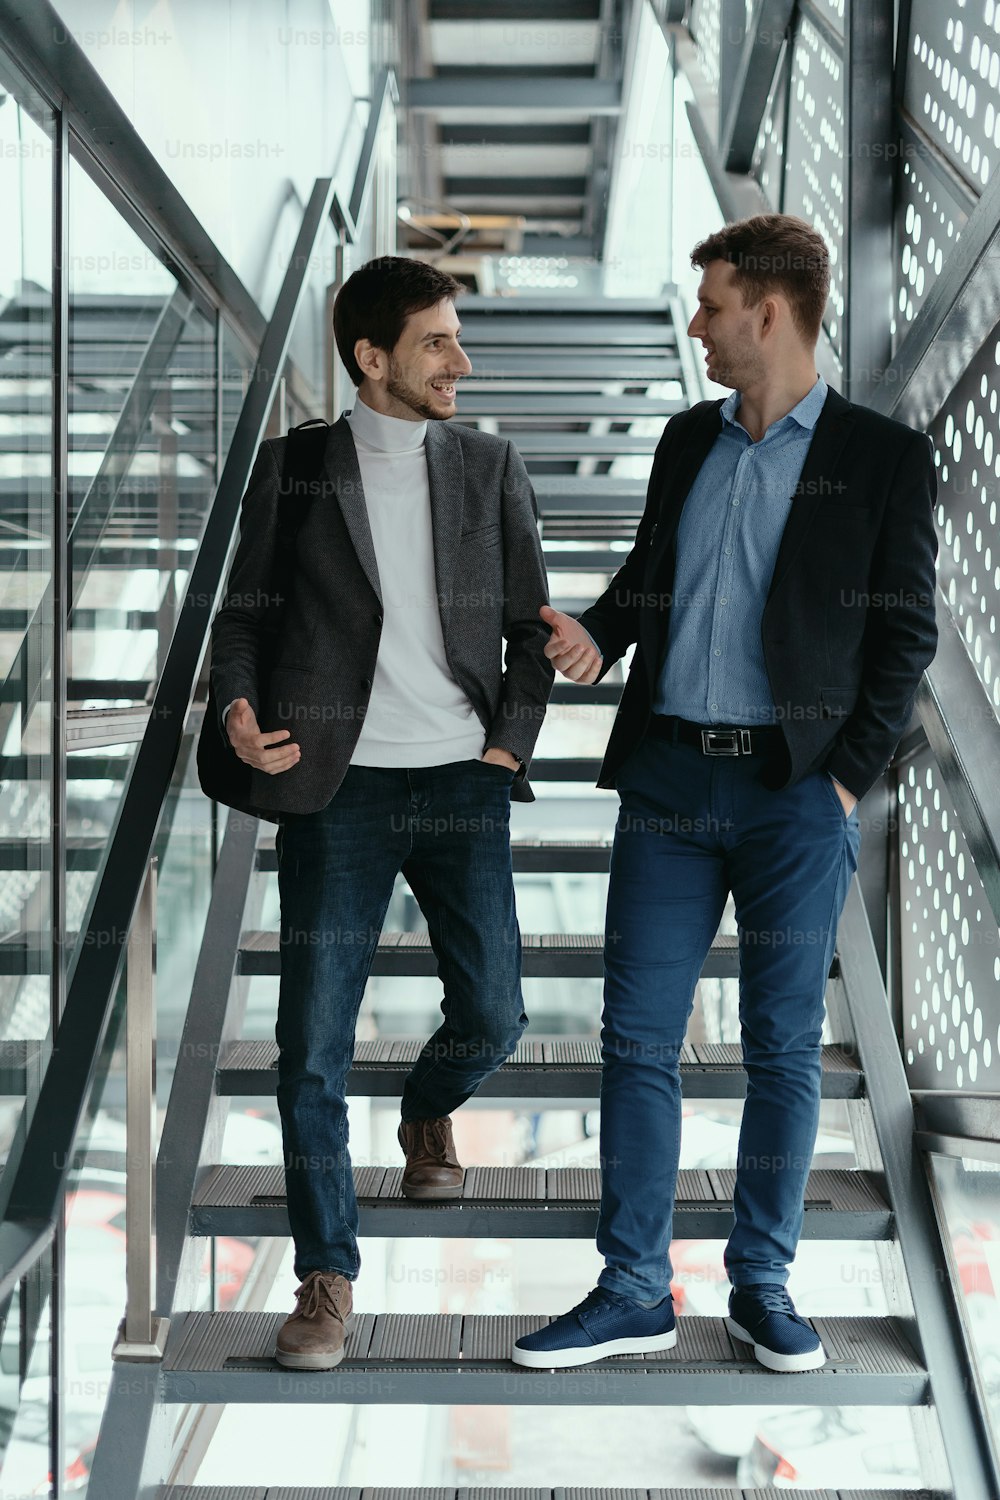 Dos jóvenes hombres de negocios suben y bajan las escaleras mientras charlan en un edificio moderno.